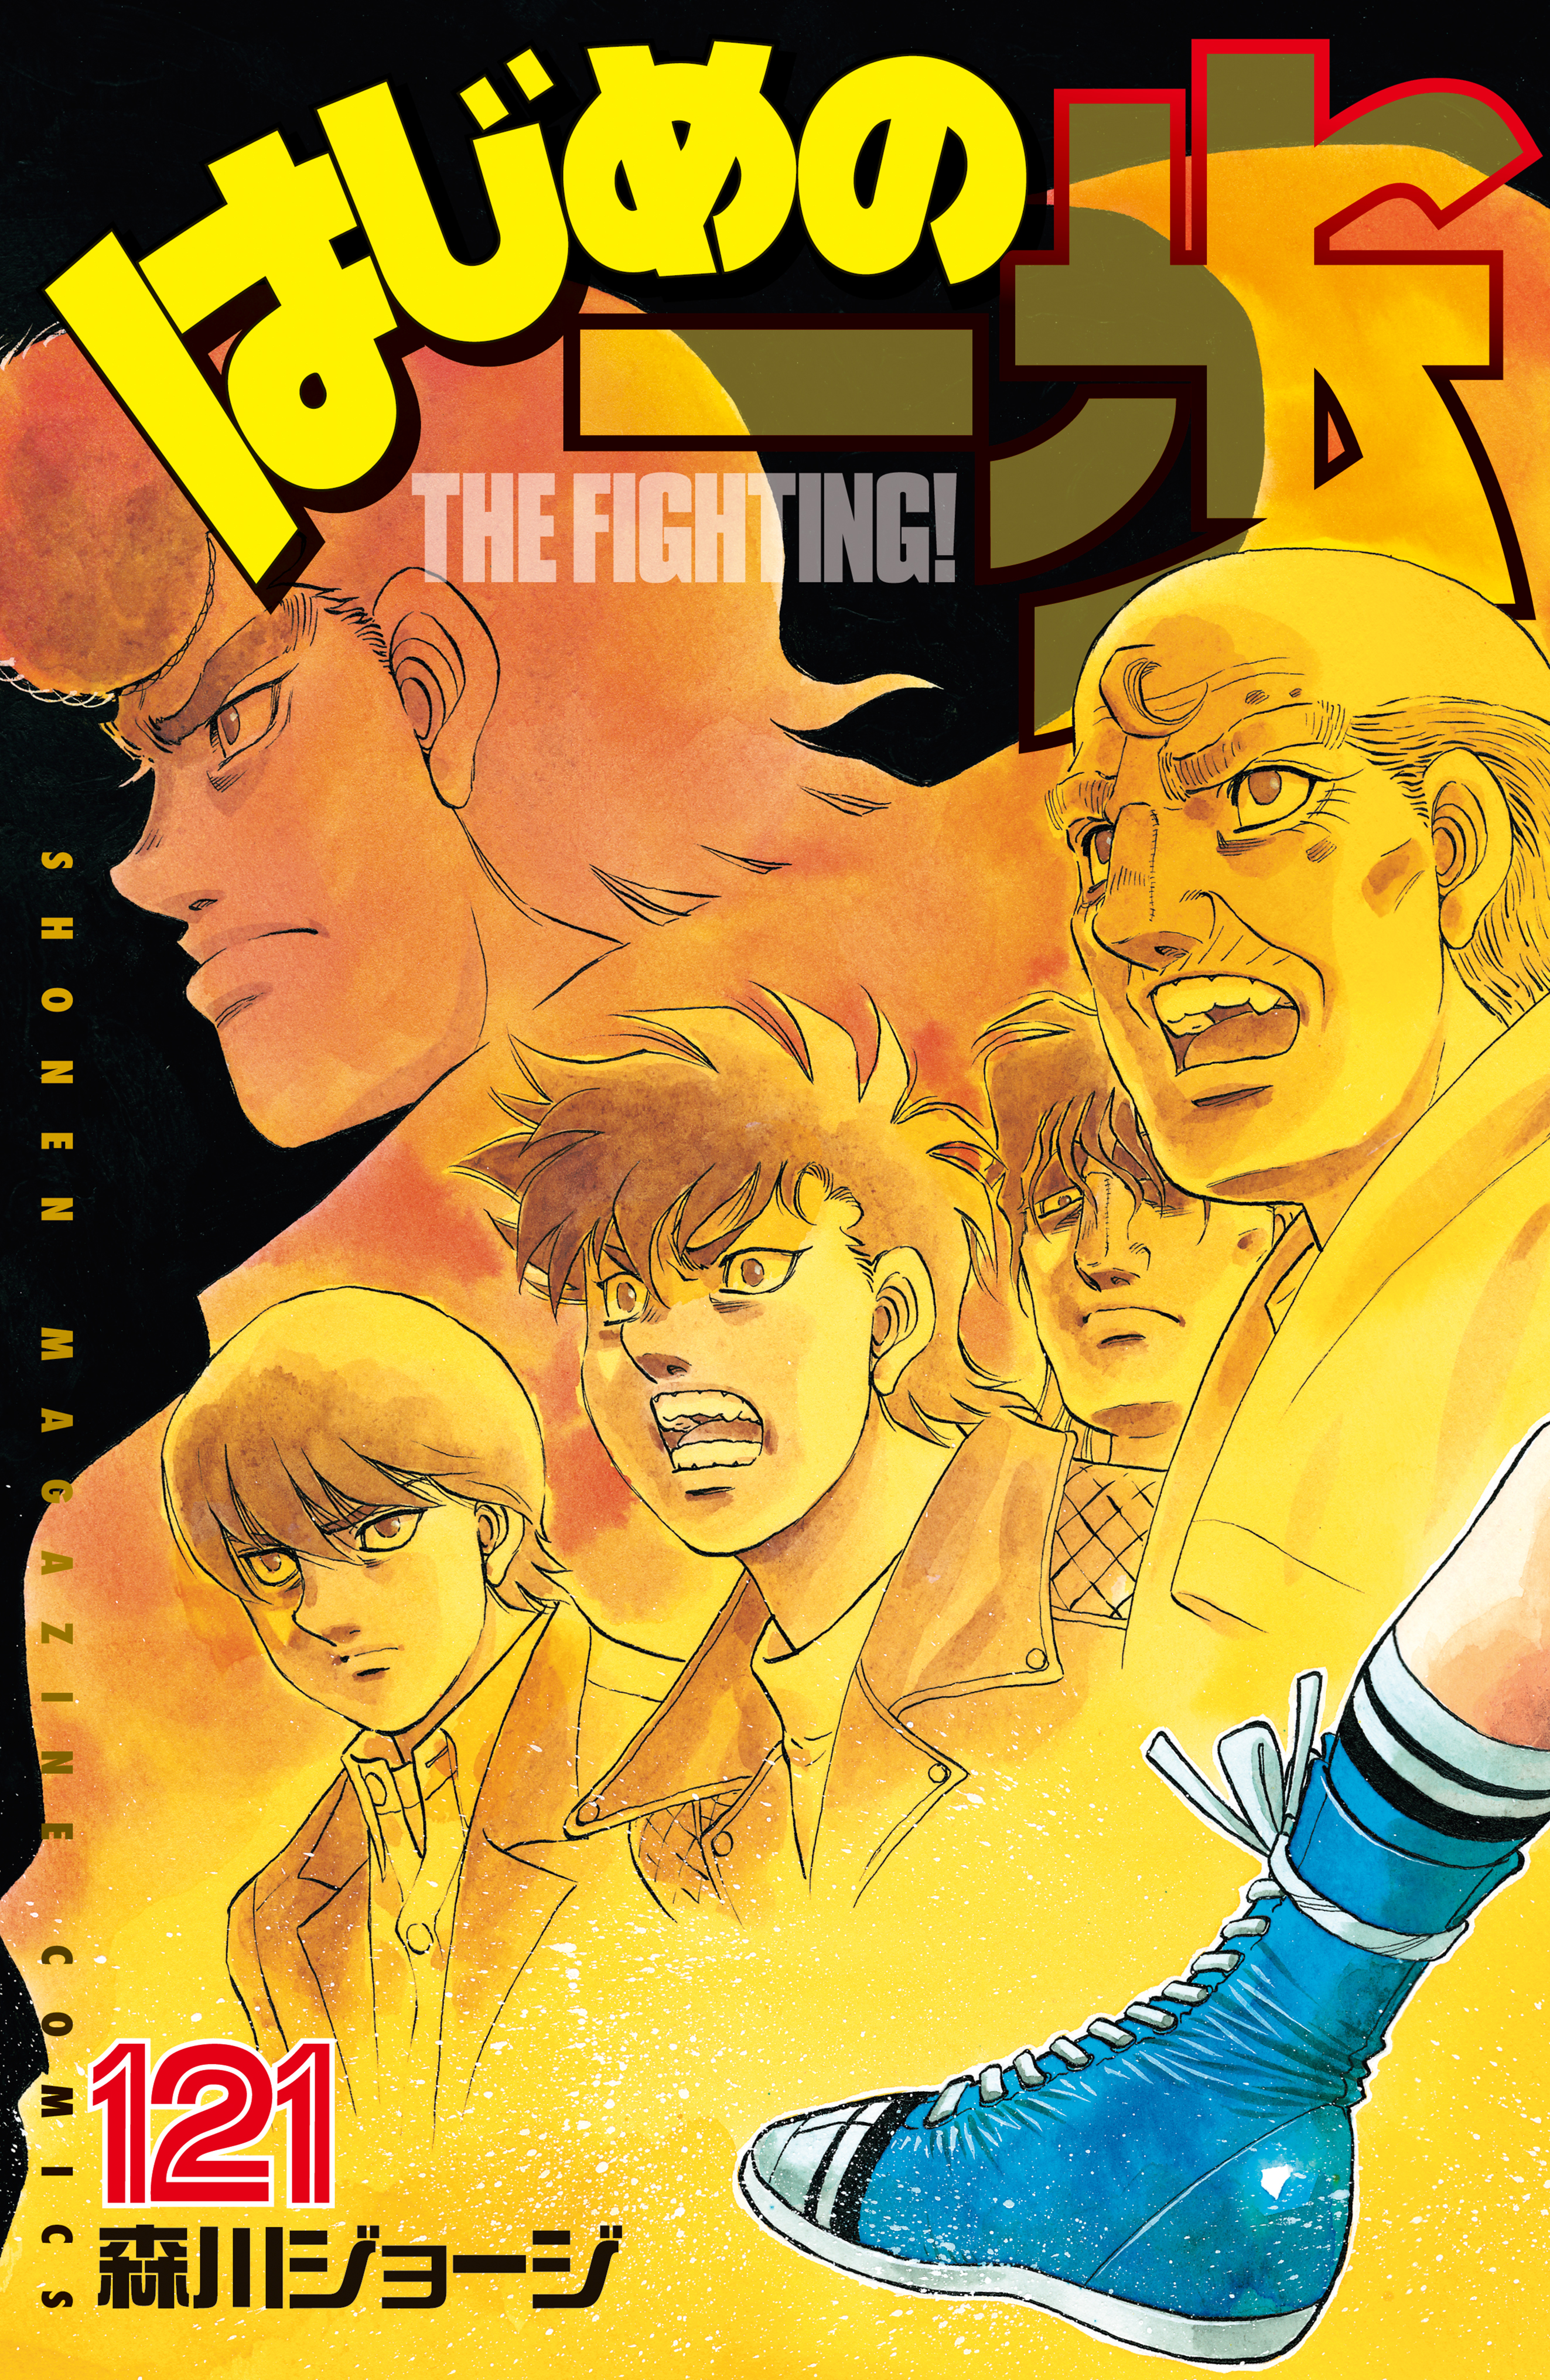 はじめの一歩 : THE FIGHTING! 128巻セット - craole.jp